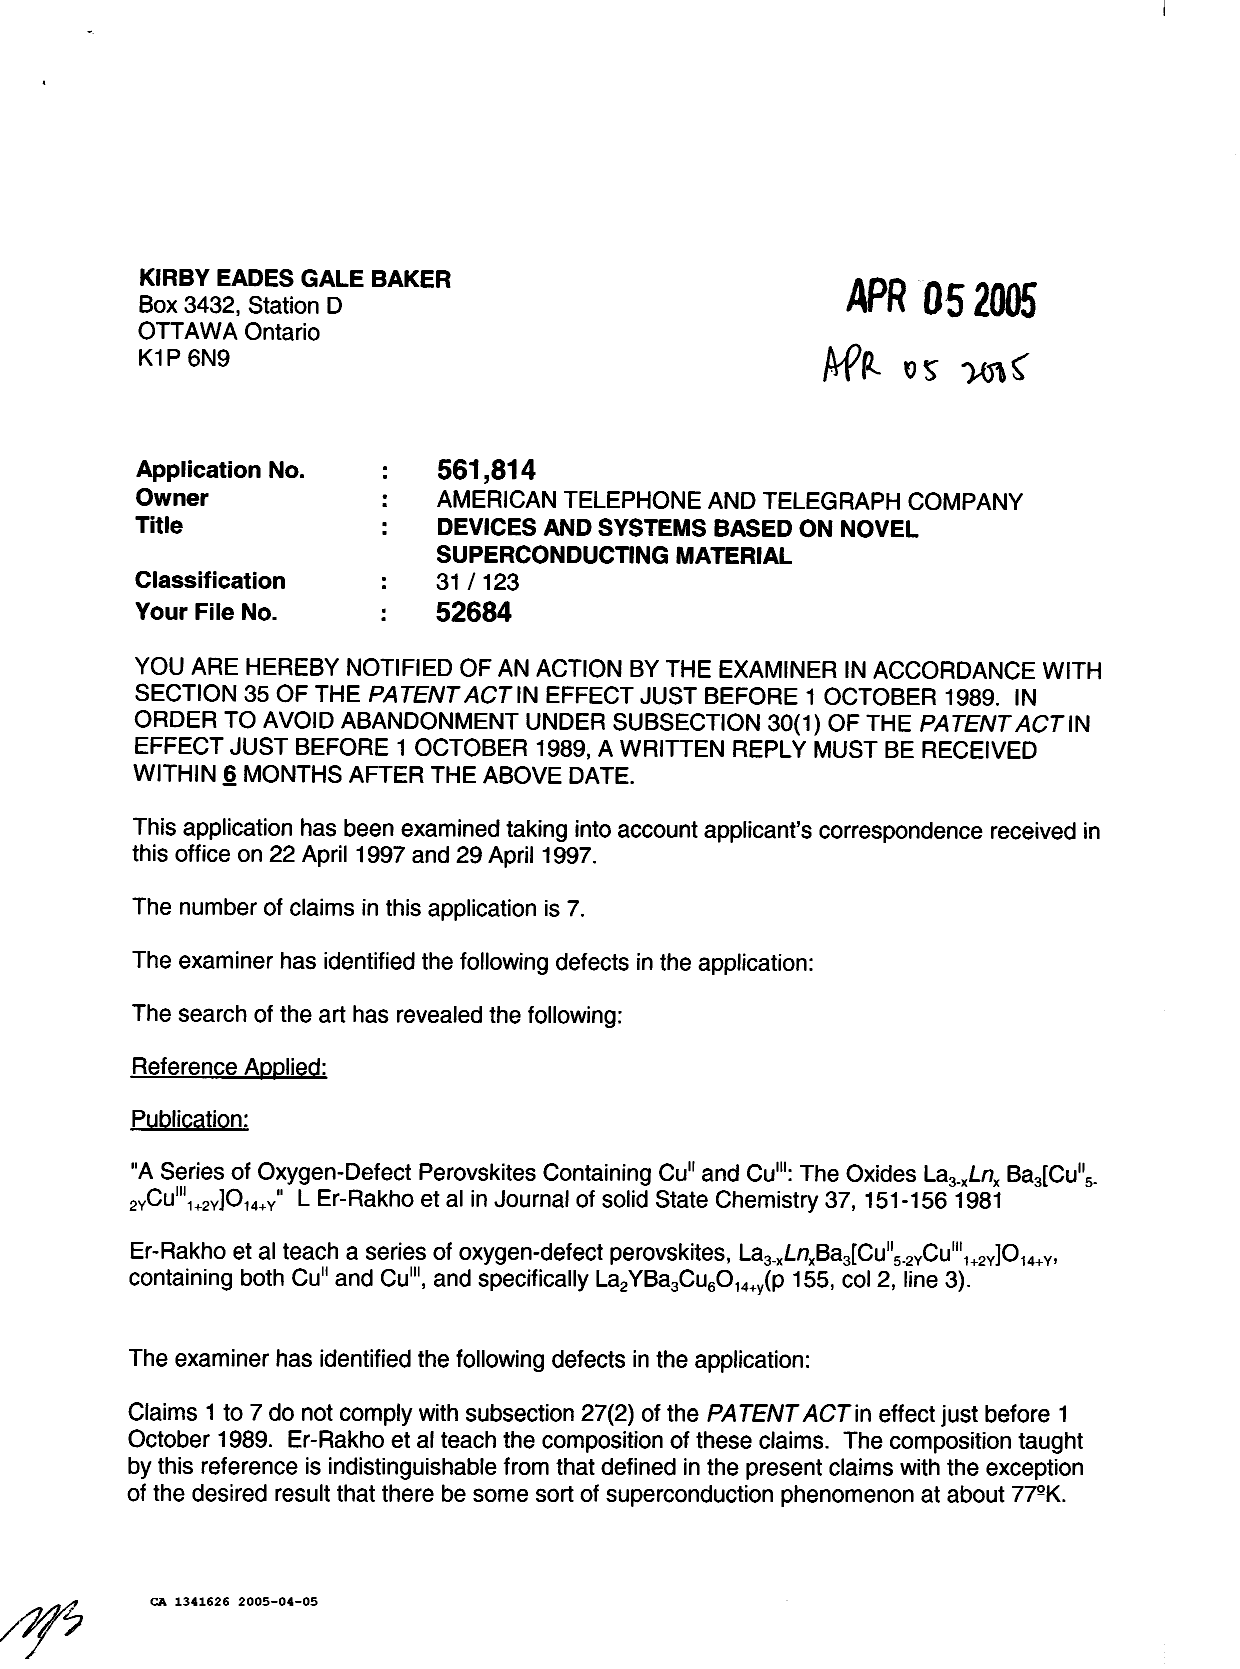 Document de brevet canadien 1341626. Demande d'examen 20050405. Image 1 de 2